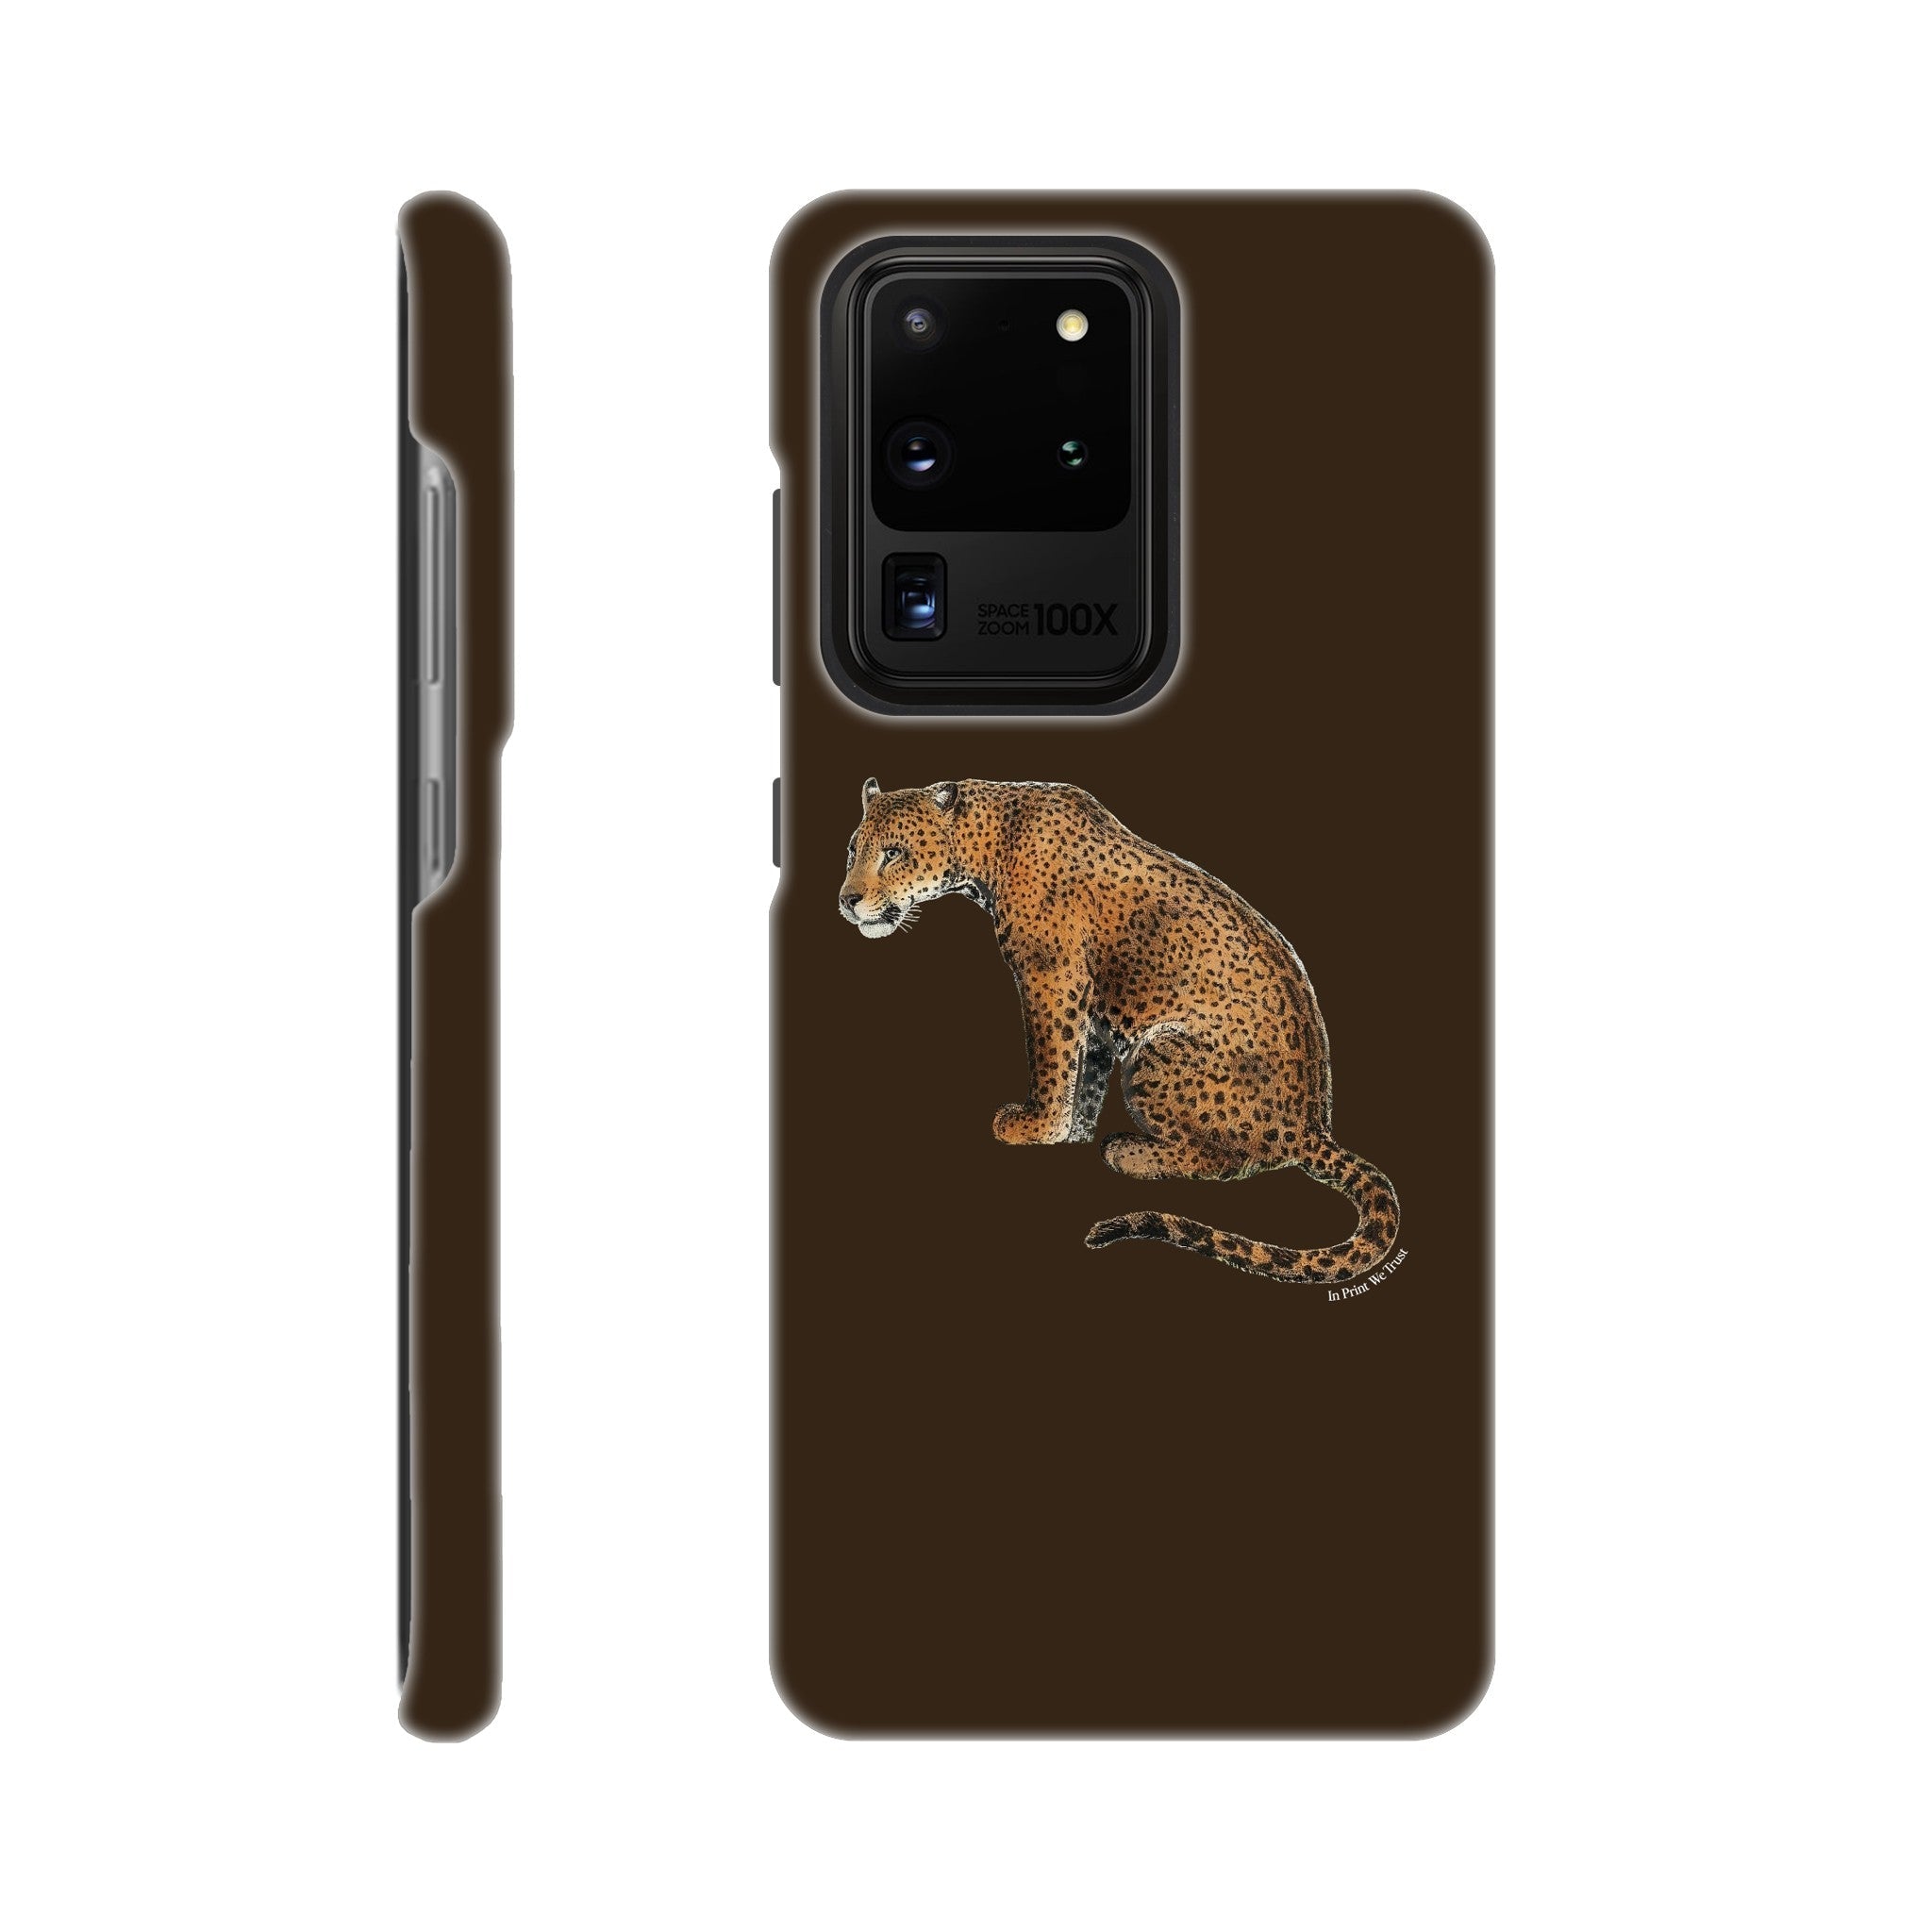 'Leopard' phone case - In Print We Trust